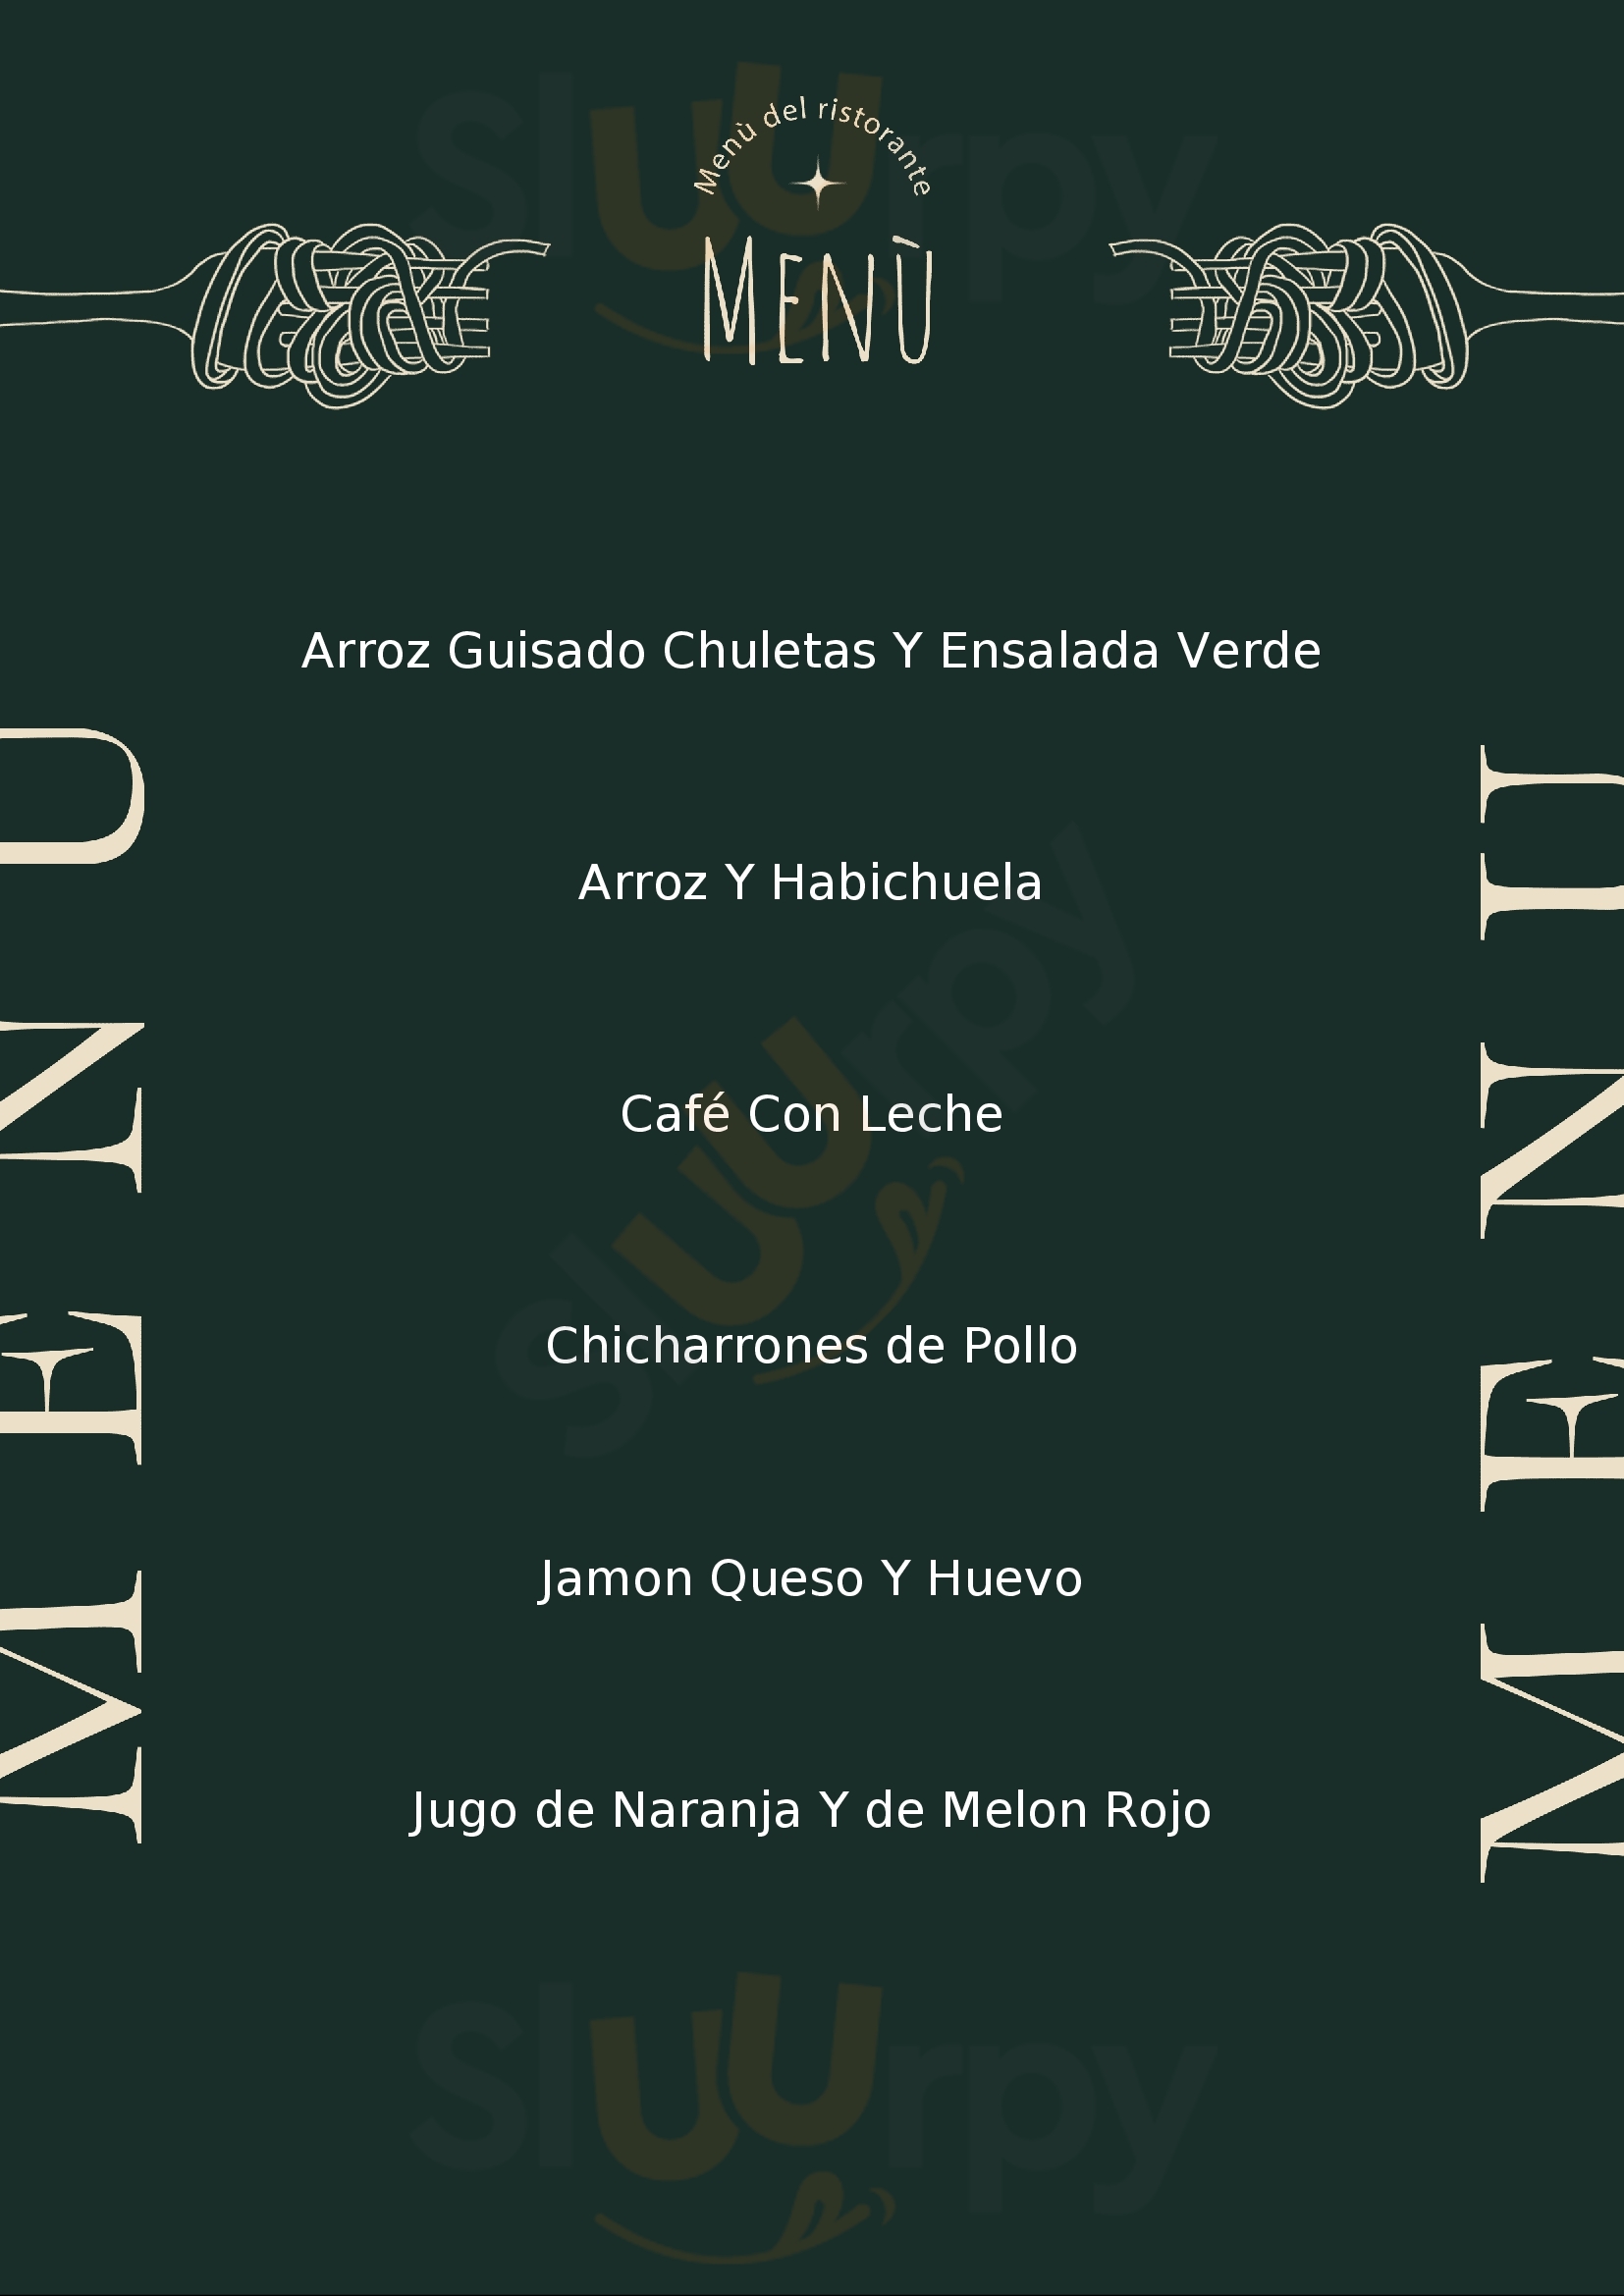 El Buen Cafe Hatillo Menu - 1